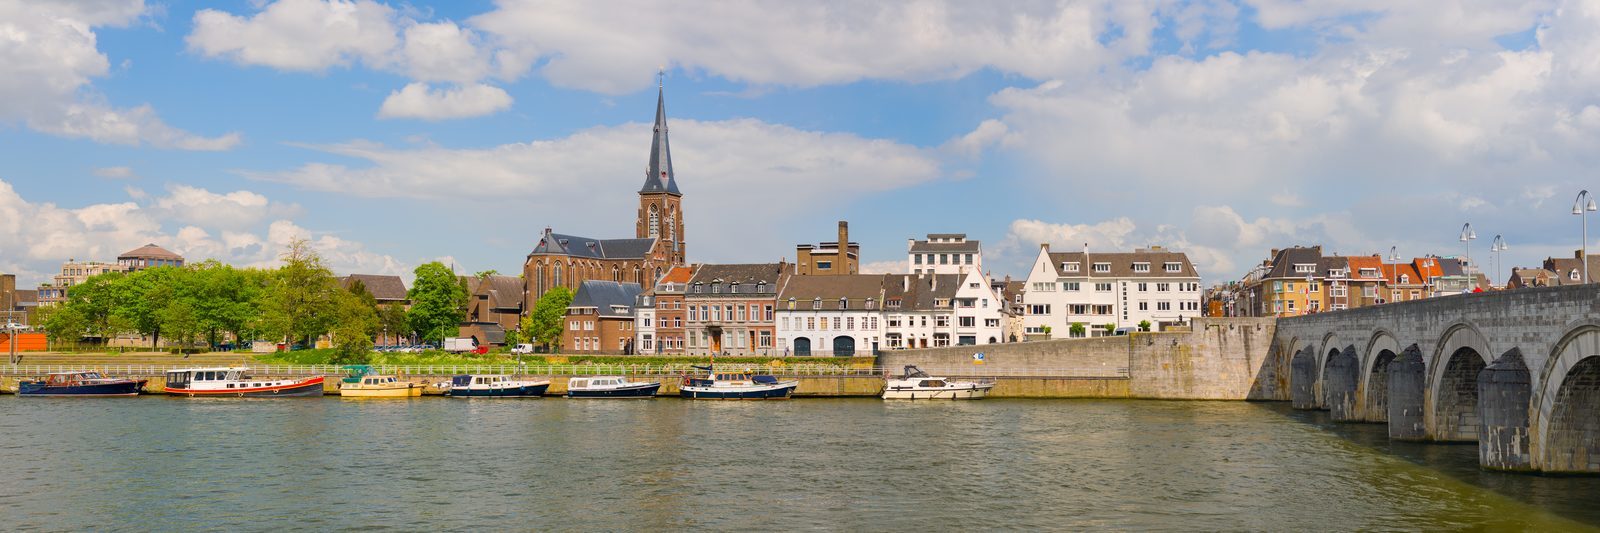 Wochenendtrip Maastricht